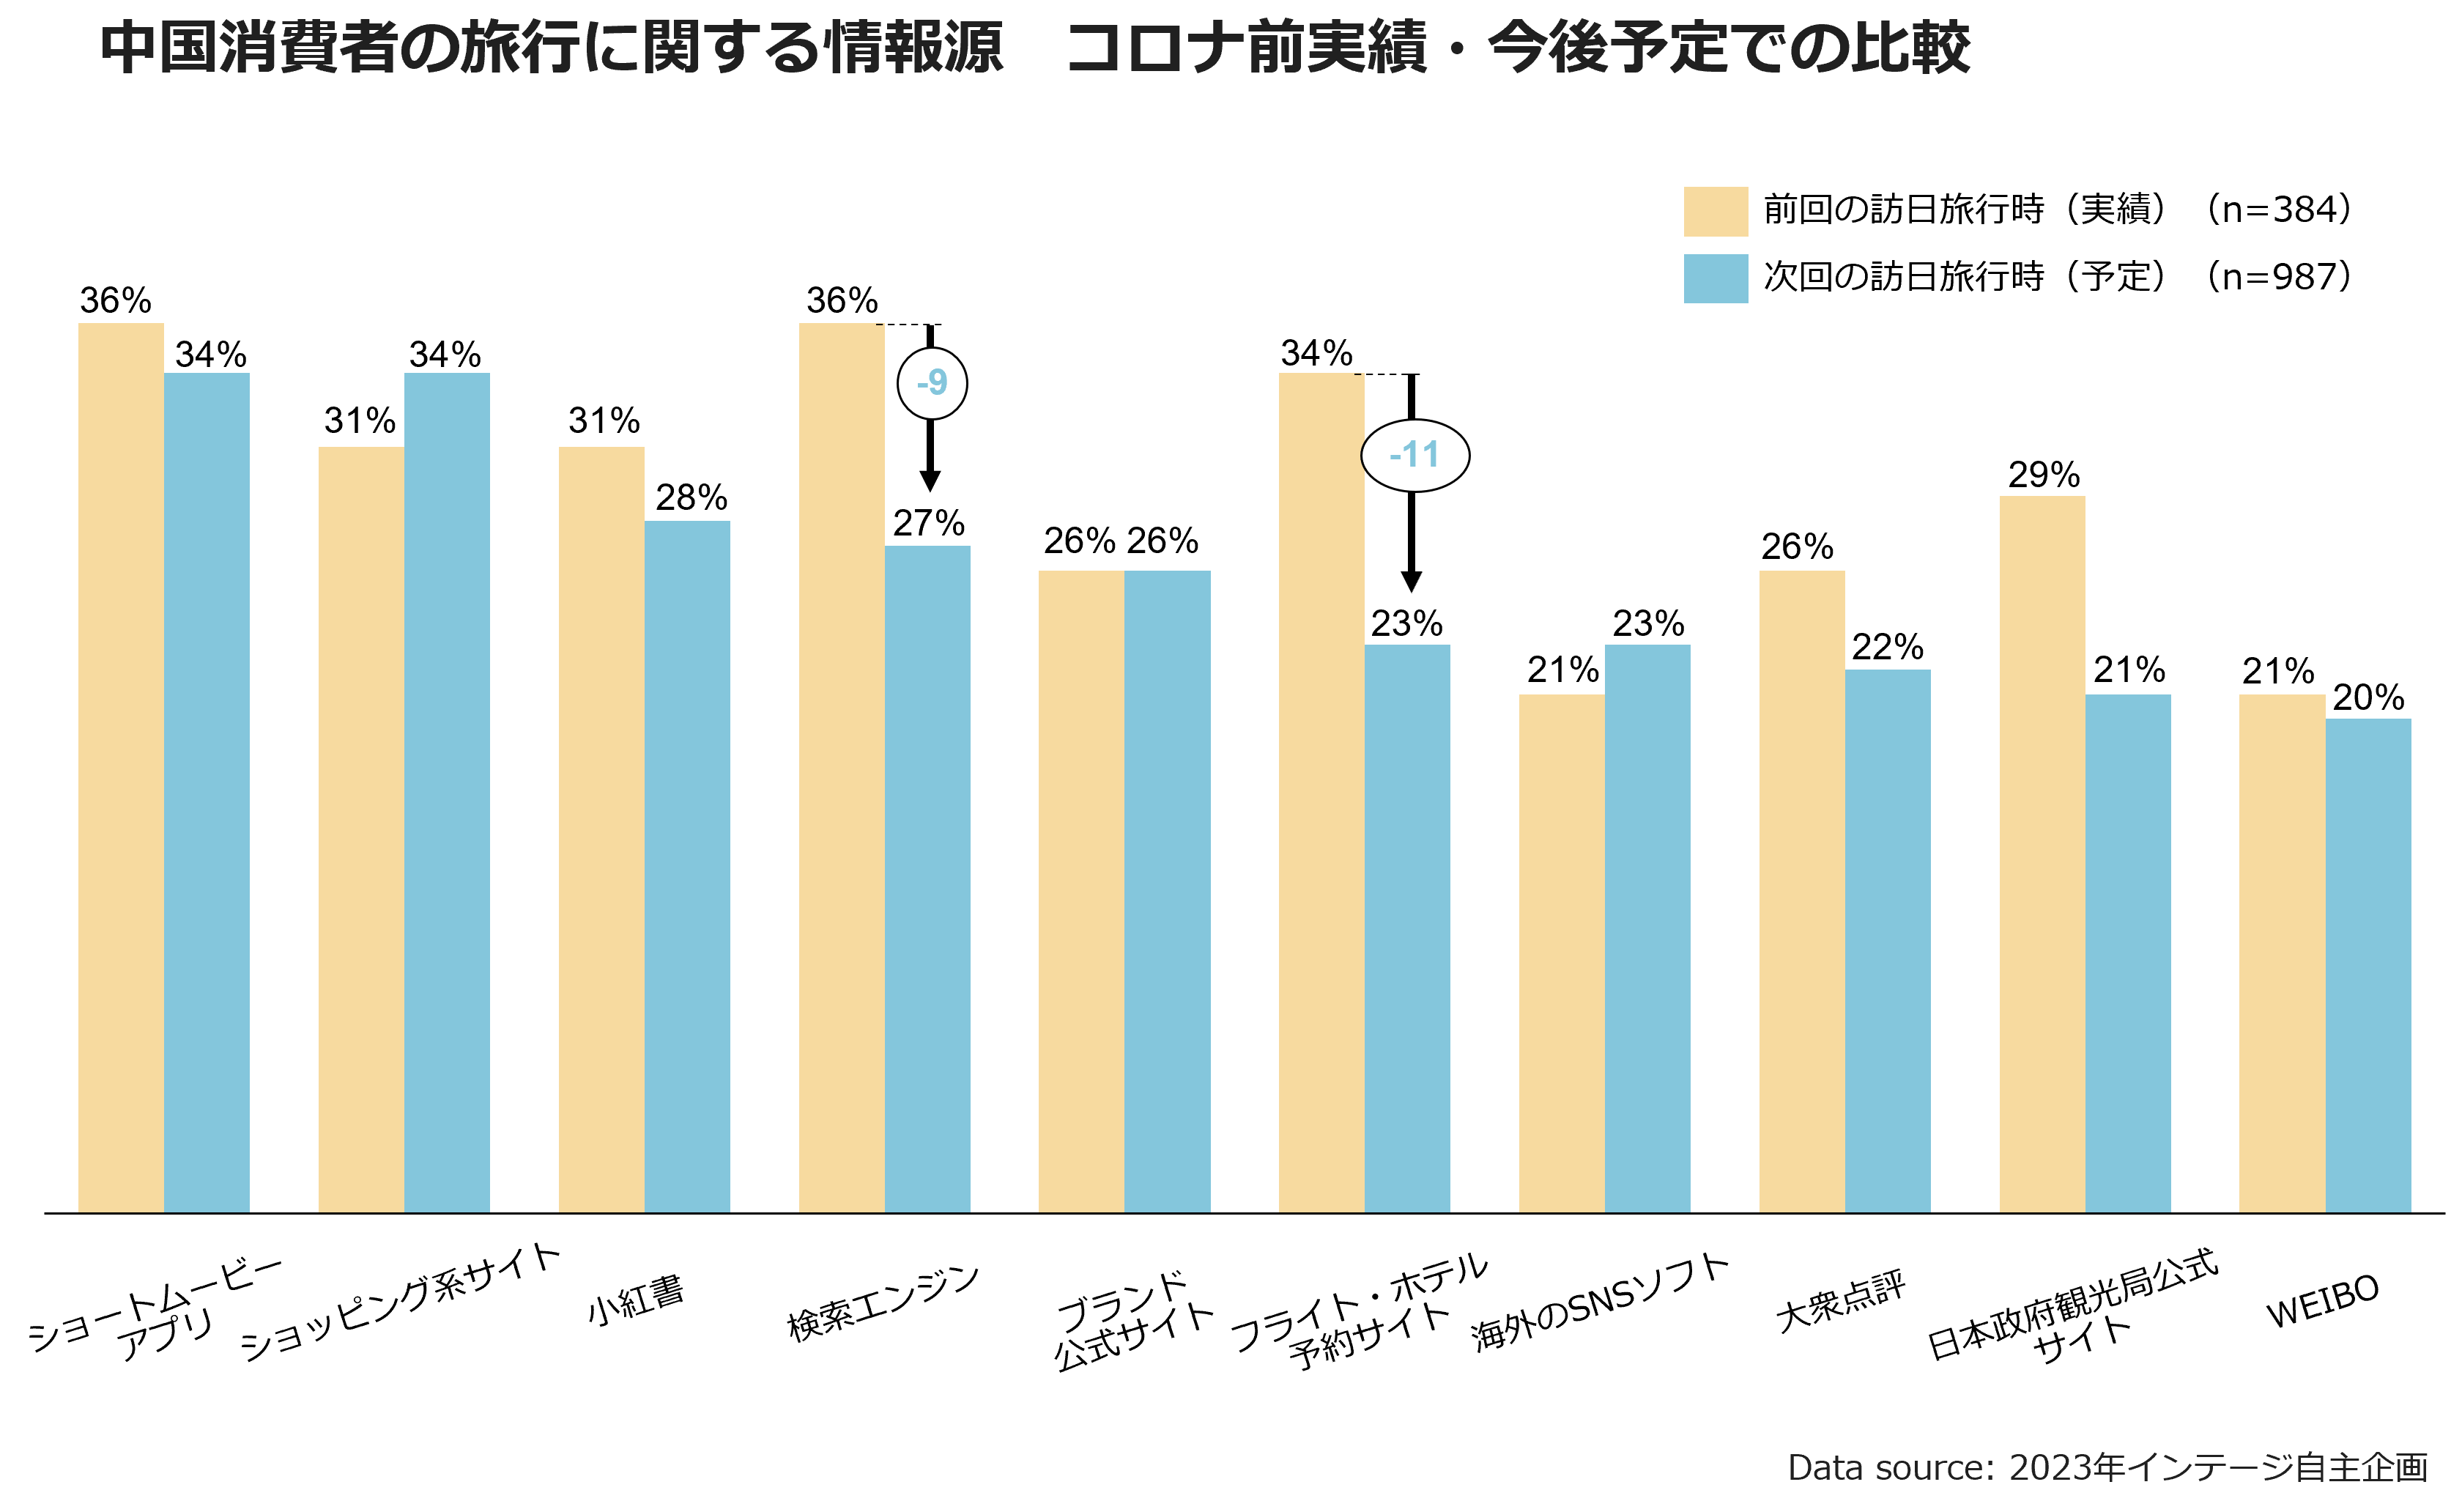 中国消費者の旅行に関する情報源　コロナ前実績・今後予定での比較